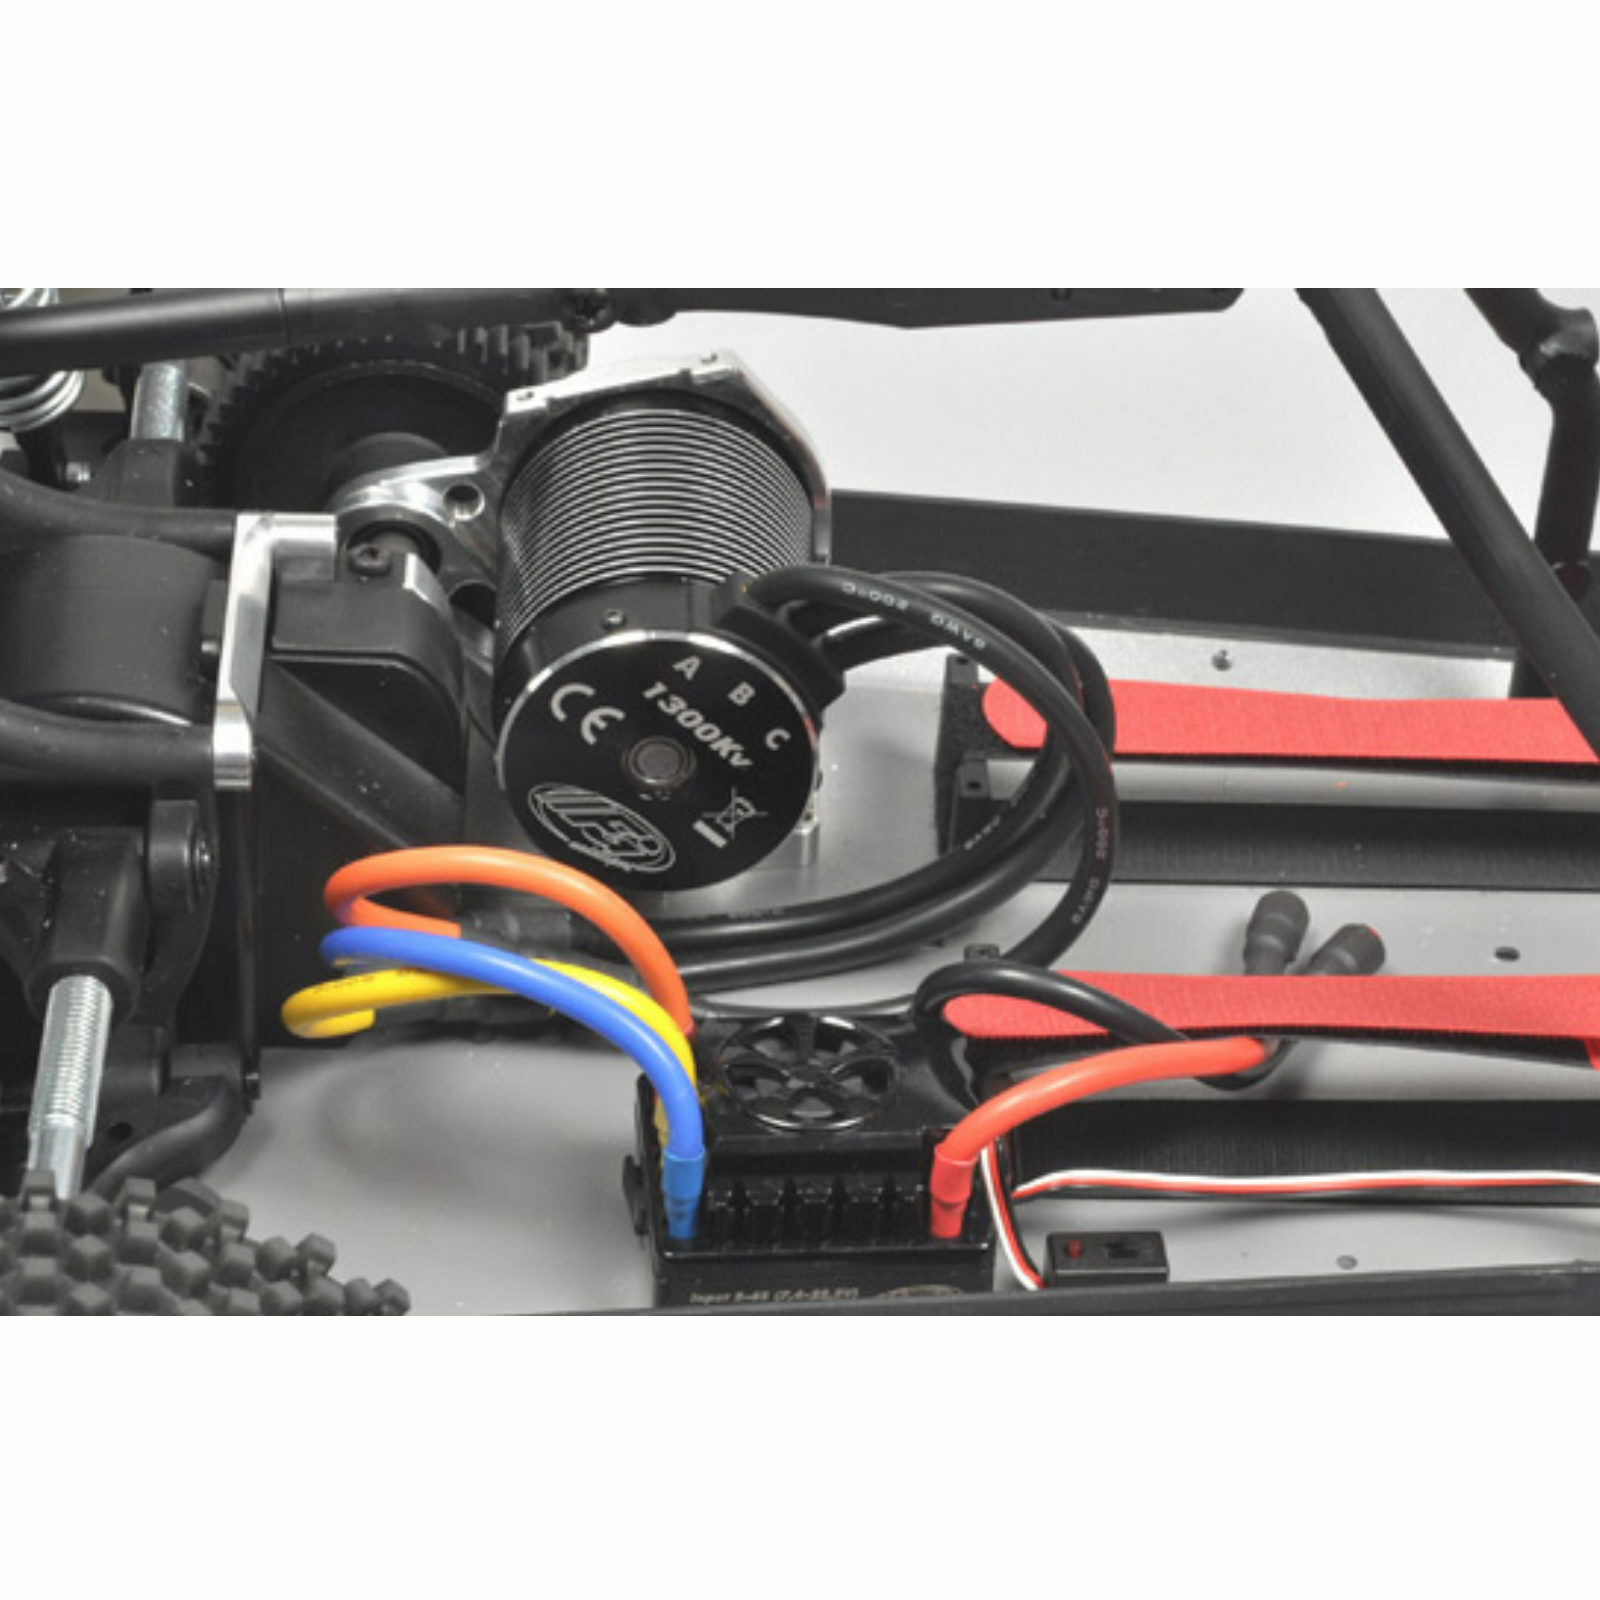 FG Modellsport 16 Fun Cross Sport E Brushless Buggy 2WD Elektromotor lackiert